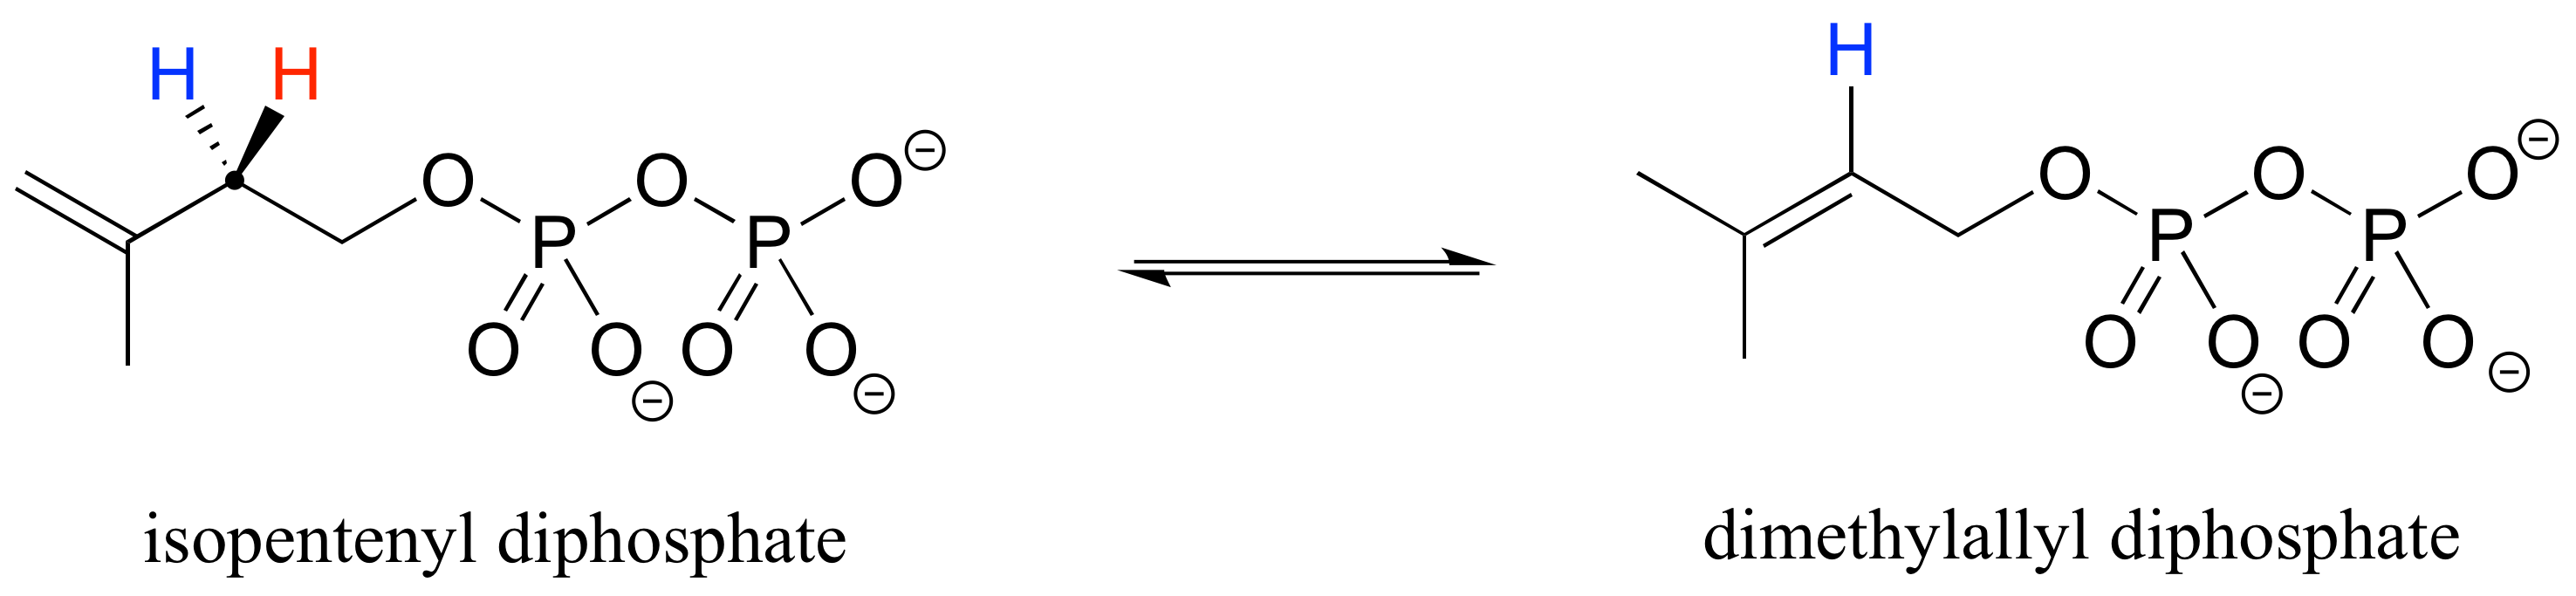 Difosfato de isopentenilo en equilibrio con difosfato de dimetilalilo. Se elimina un hidrógeno y el alqueno pasa de los carbonos 1 y 2 a los carbonos 2 y 3.